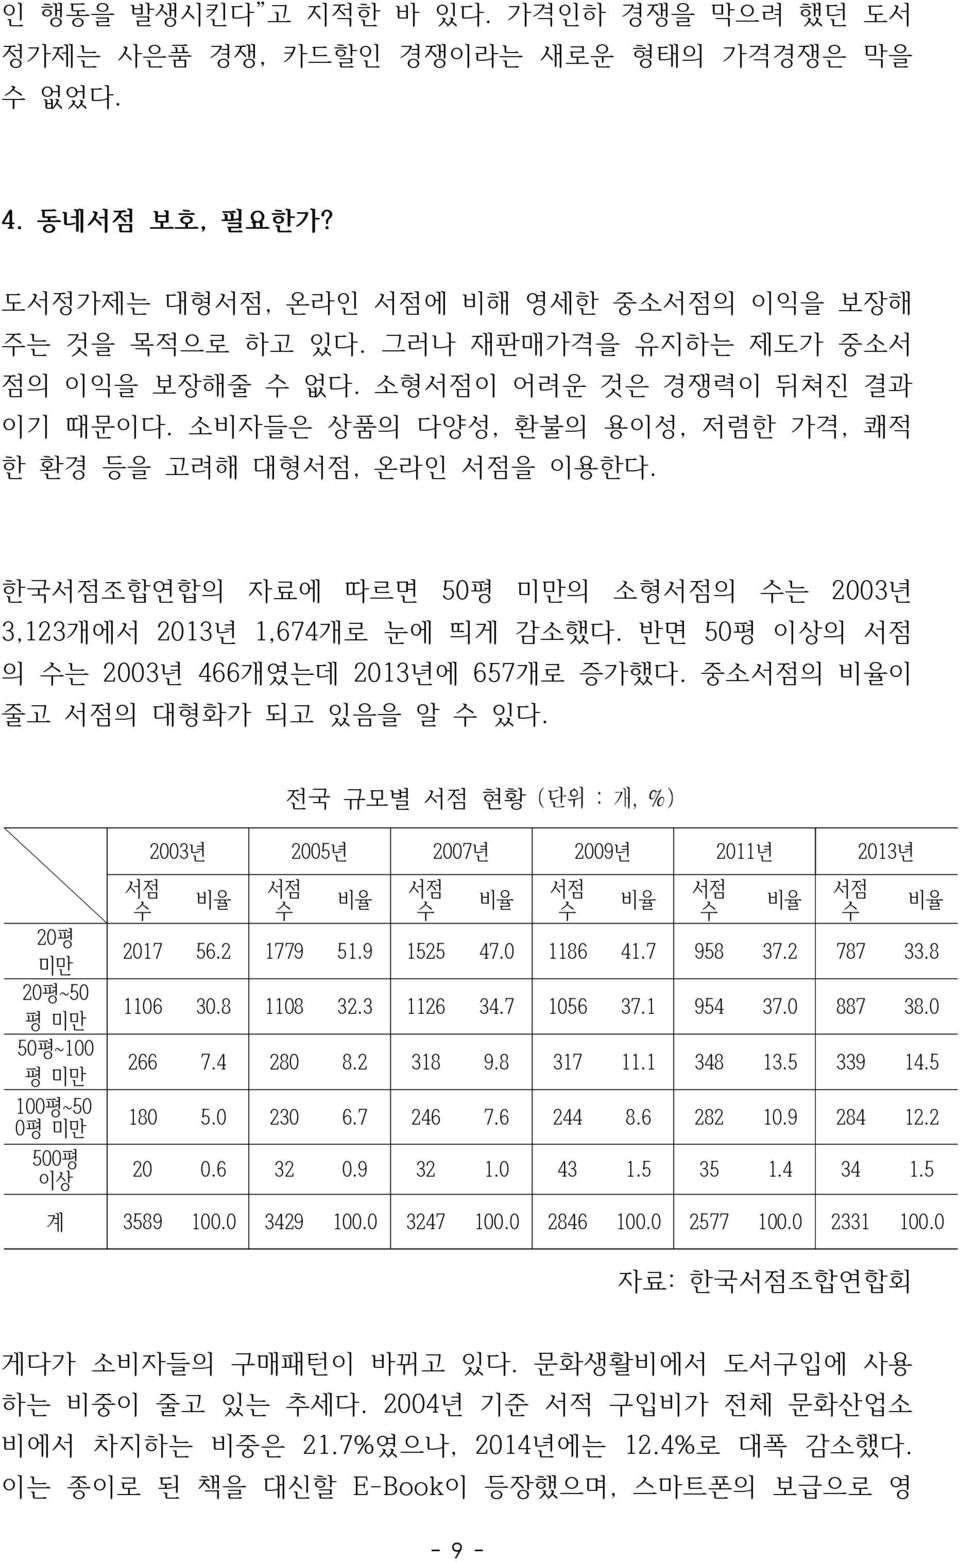 한국서점조합연합의 자료에 따르면 50평 미만의 소형서점의 수는 2003년 3,123개에서 2013년 1,674개로 눈에 띄게 감소했다. 반면 50평 이상의 서점 의 수는 2003년 466개였는데 2013년에 657개로 증가했다. 중소서점의 비율이 줄고 서점의 대형화가 되고 있음을 알 수 있다.